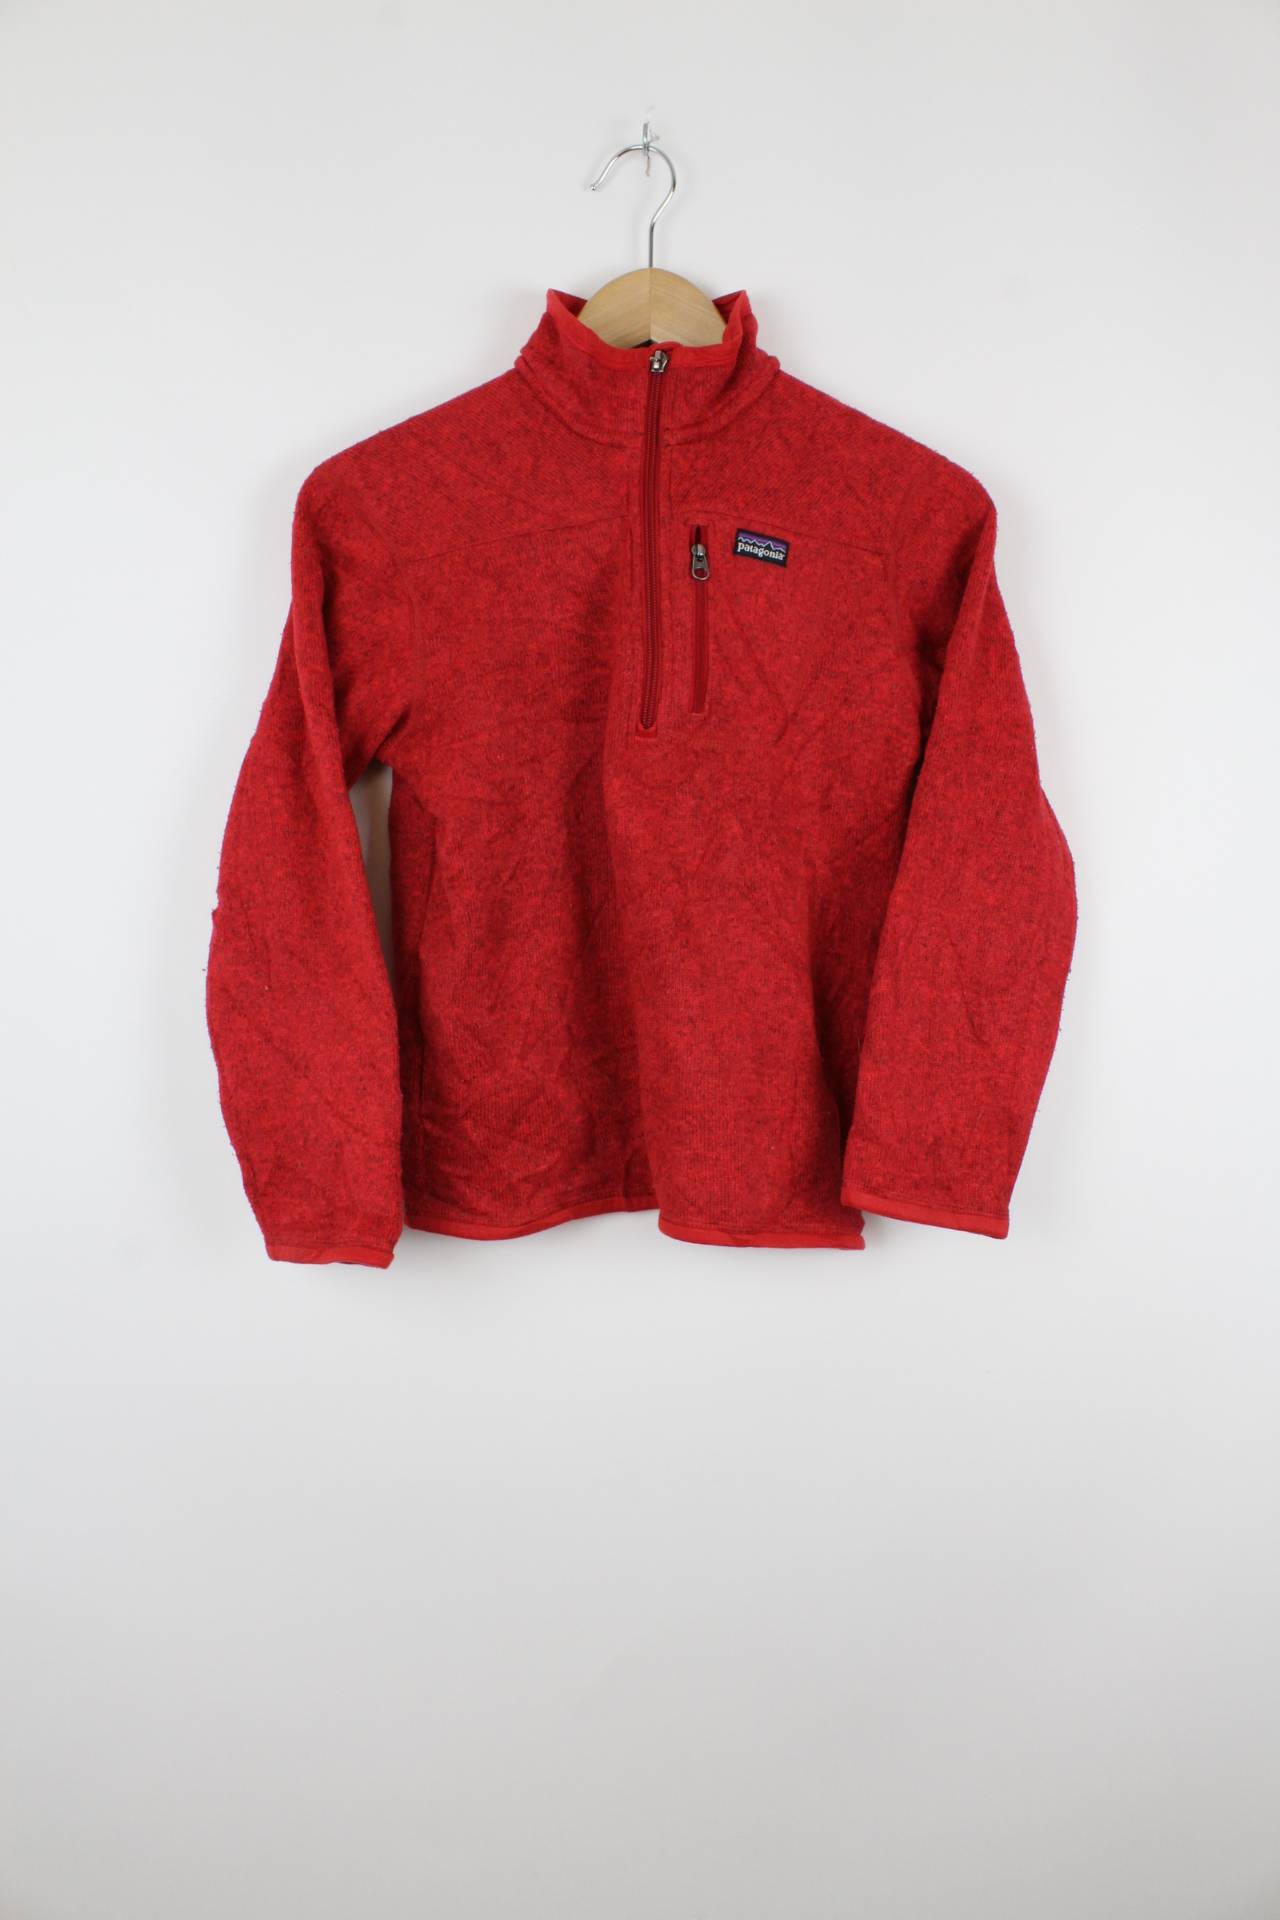 Vintage Patagonia Fleece Sweater Rot - XS